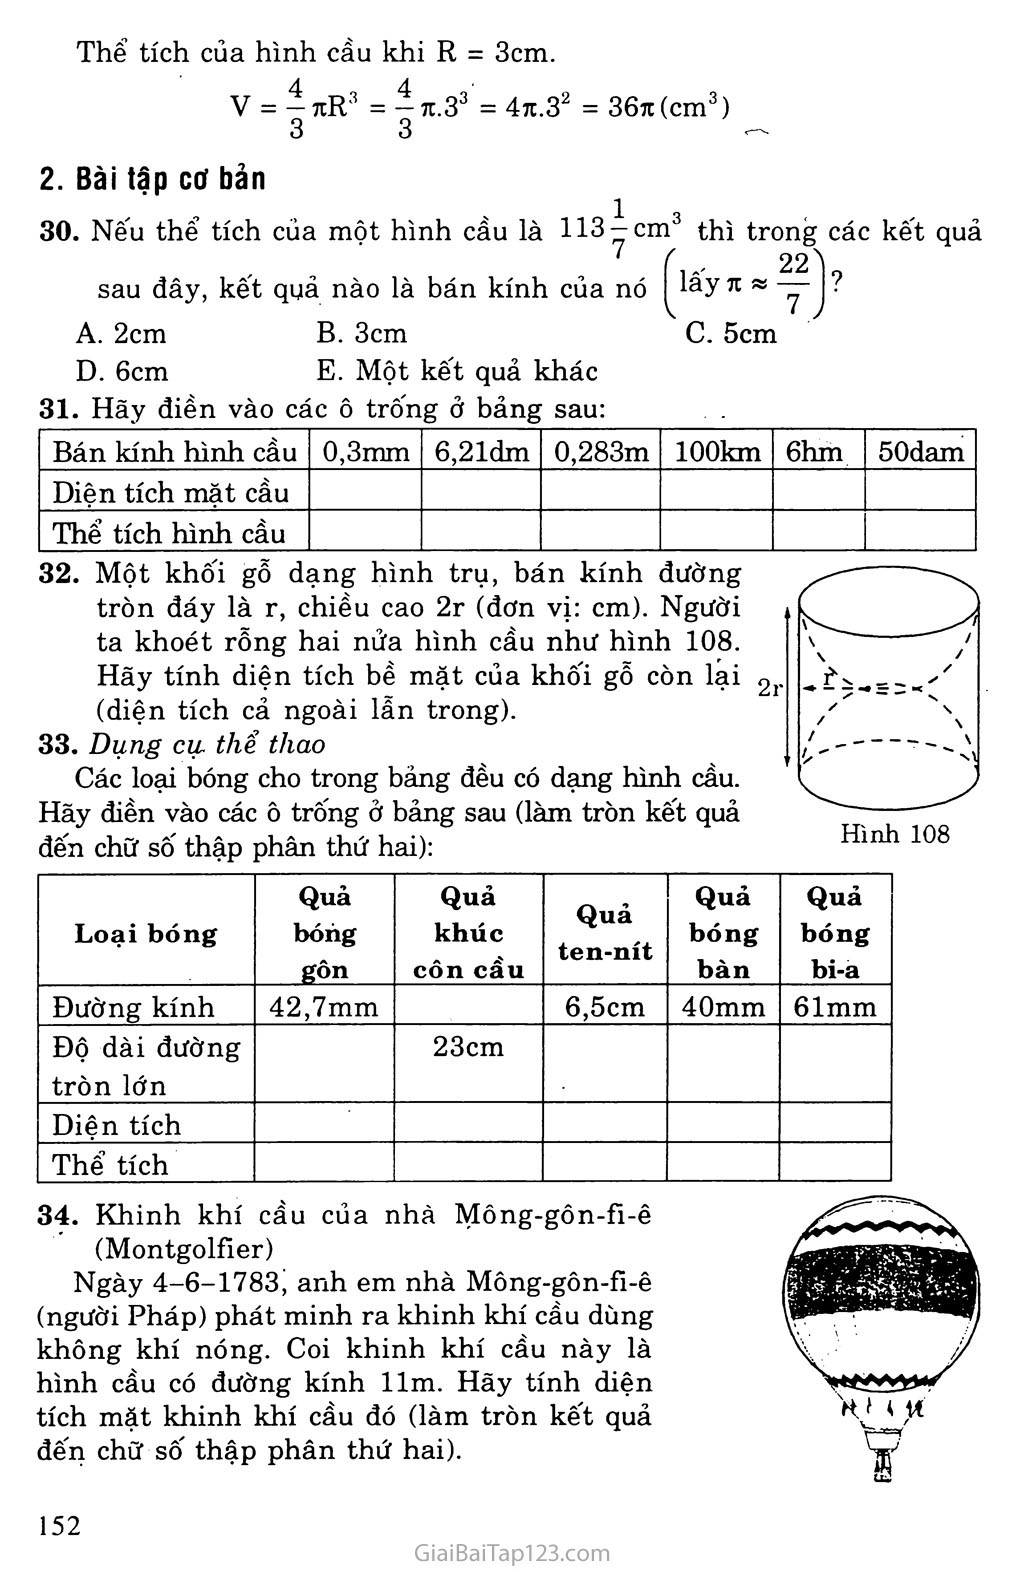 Bài 3. Hình cầu - Diện tích mặt cầu và thể tích mặt cầu trang 2